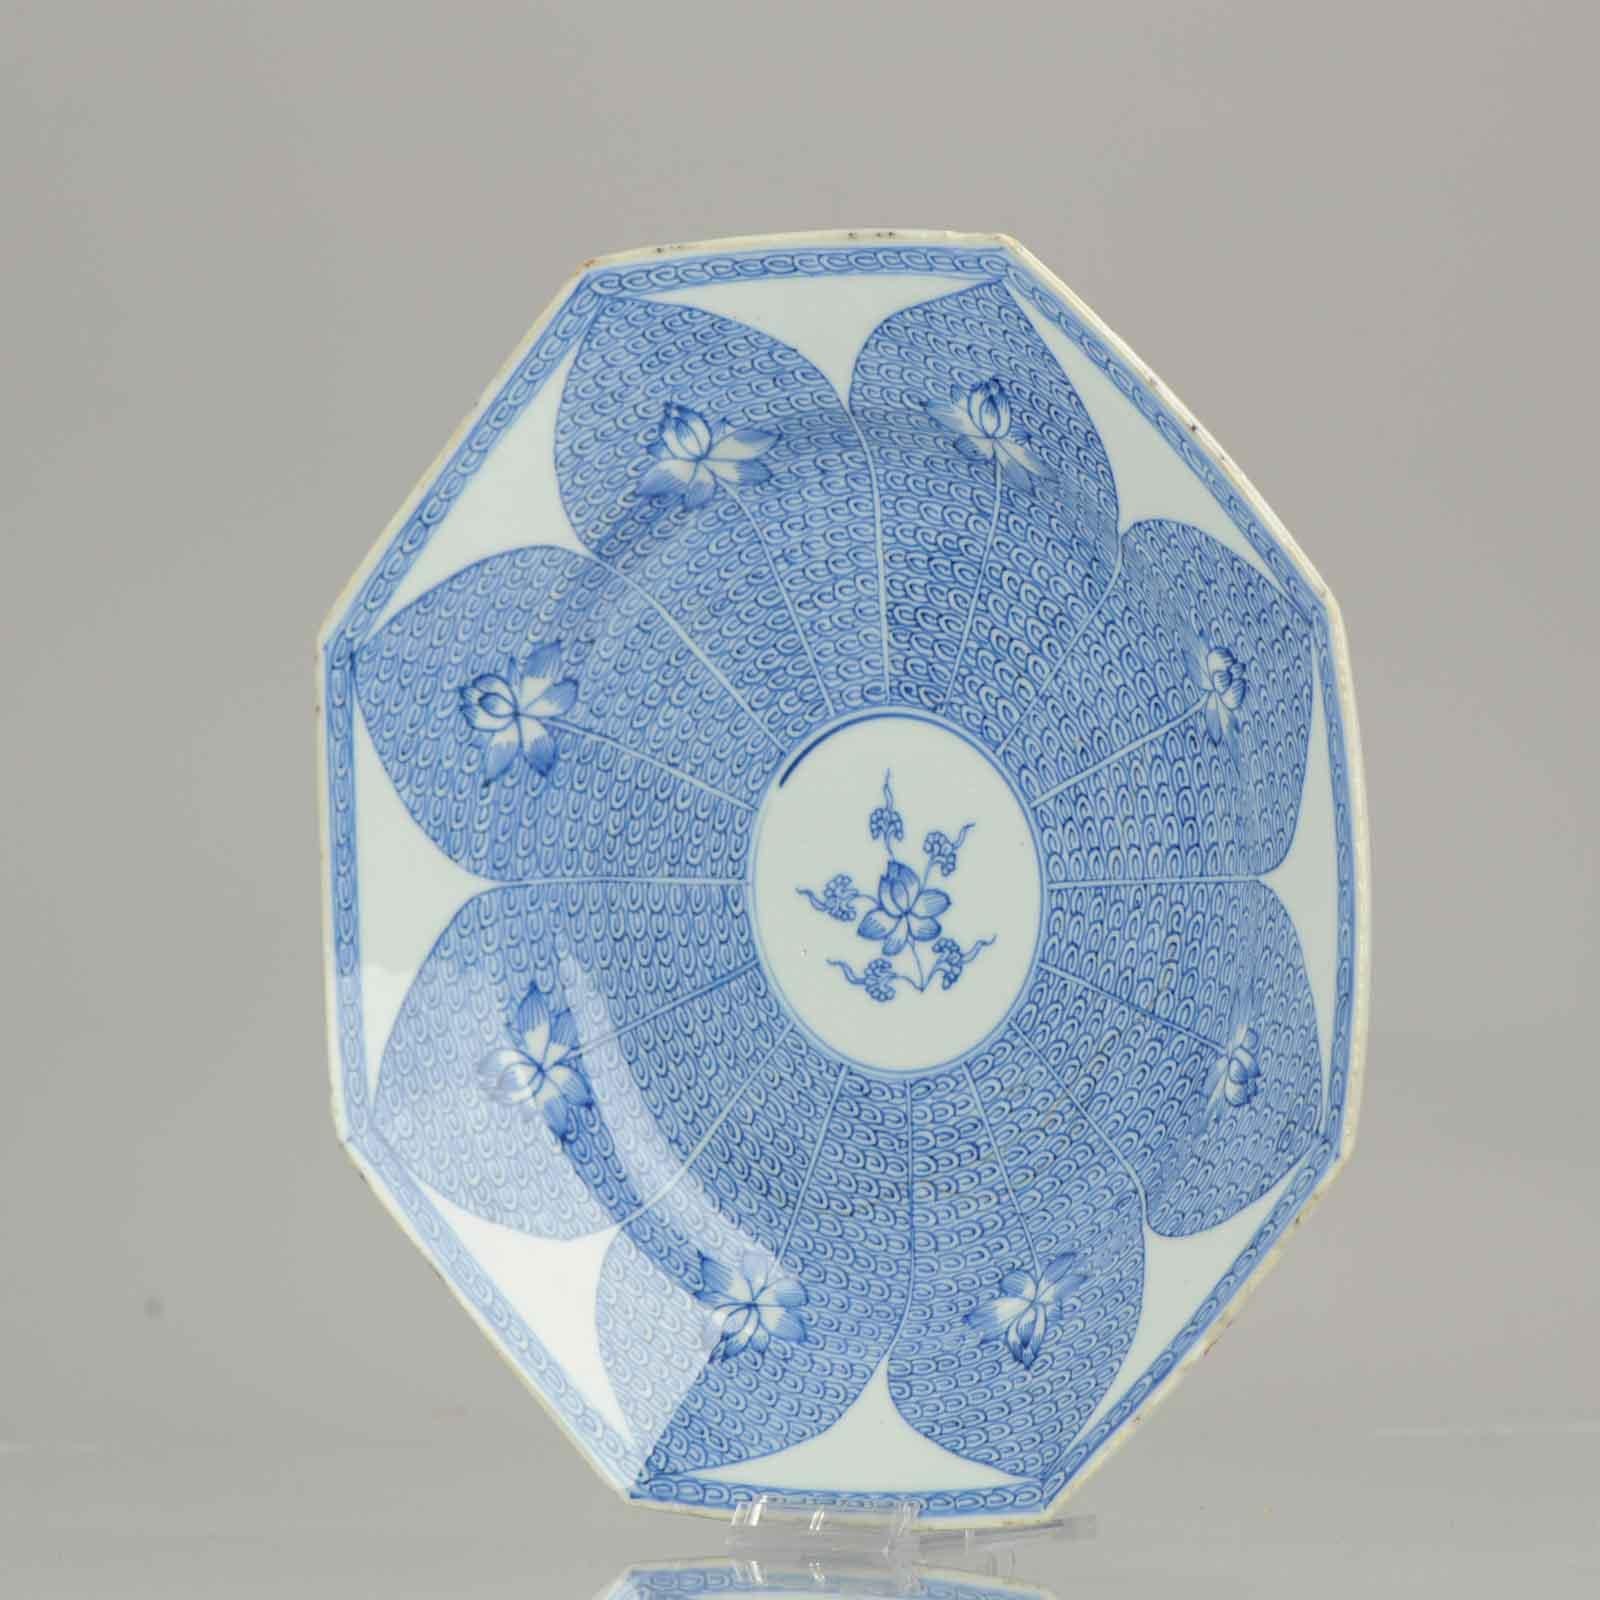 Assiette d'exportation octogonale bleue et blanche décorée au centre d'une gerbe stylisée de fleurs de lotus, bordée de pétales de lotus entourant des fleurs de lotus sur un fond de rinceaux.

Ce motif a été utilisé dans la porcelaine armoriée